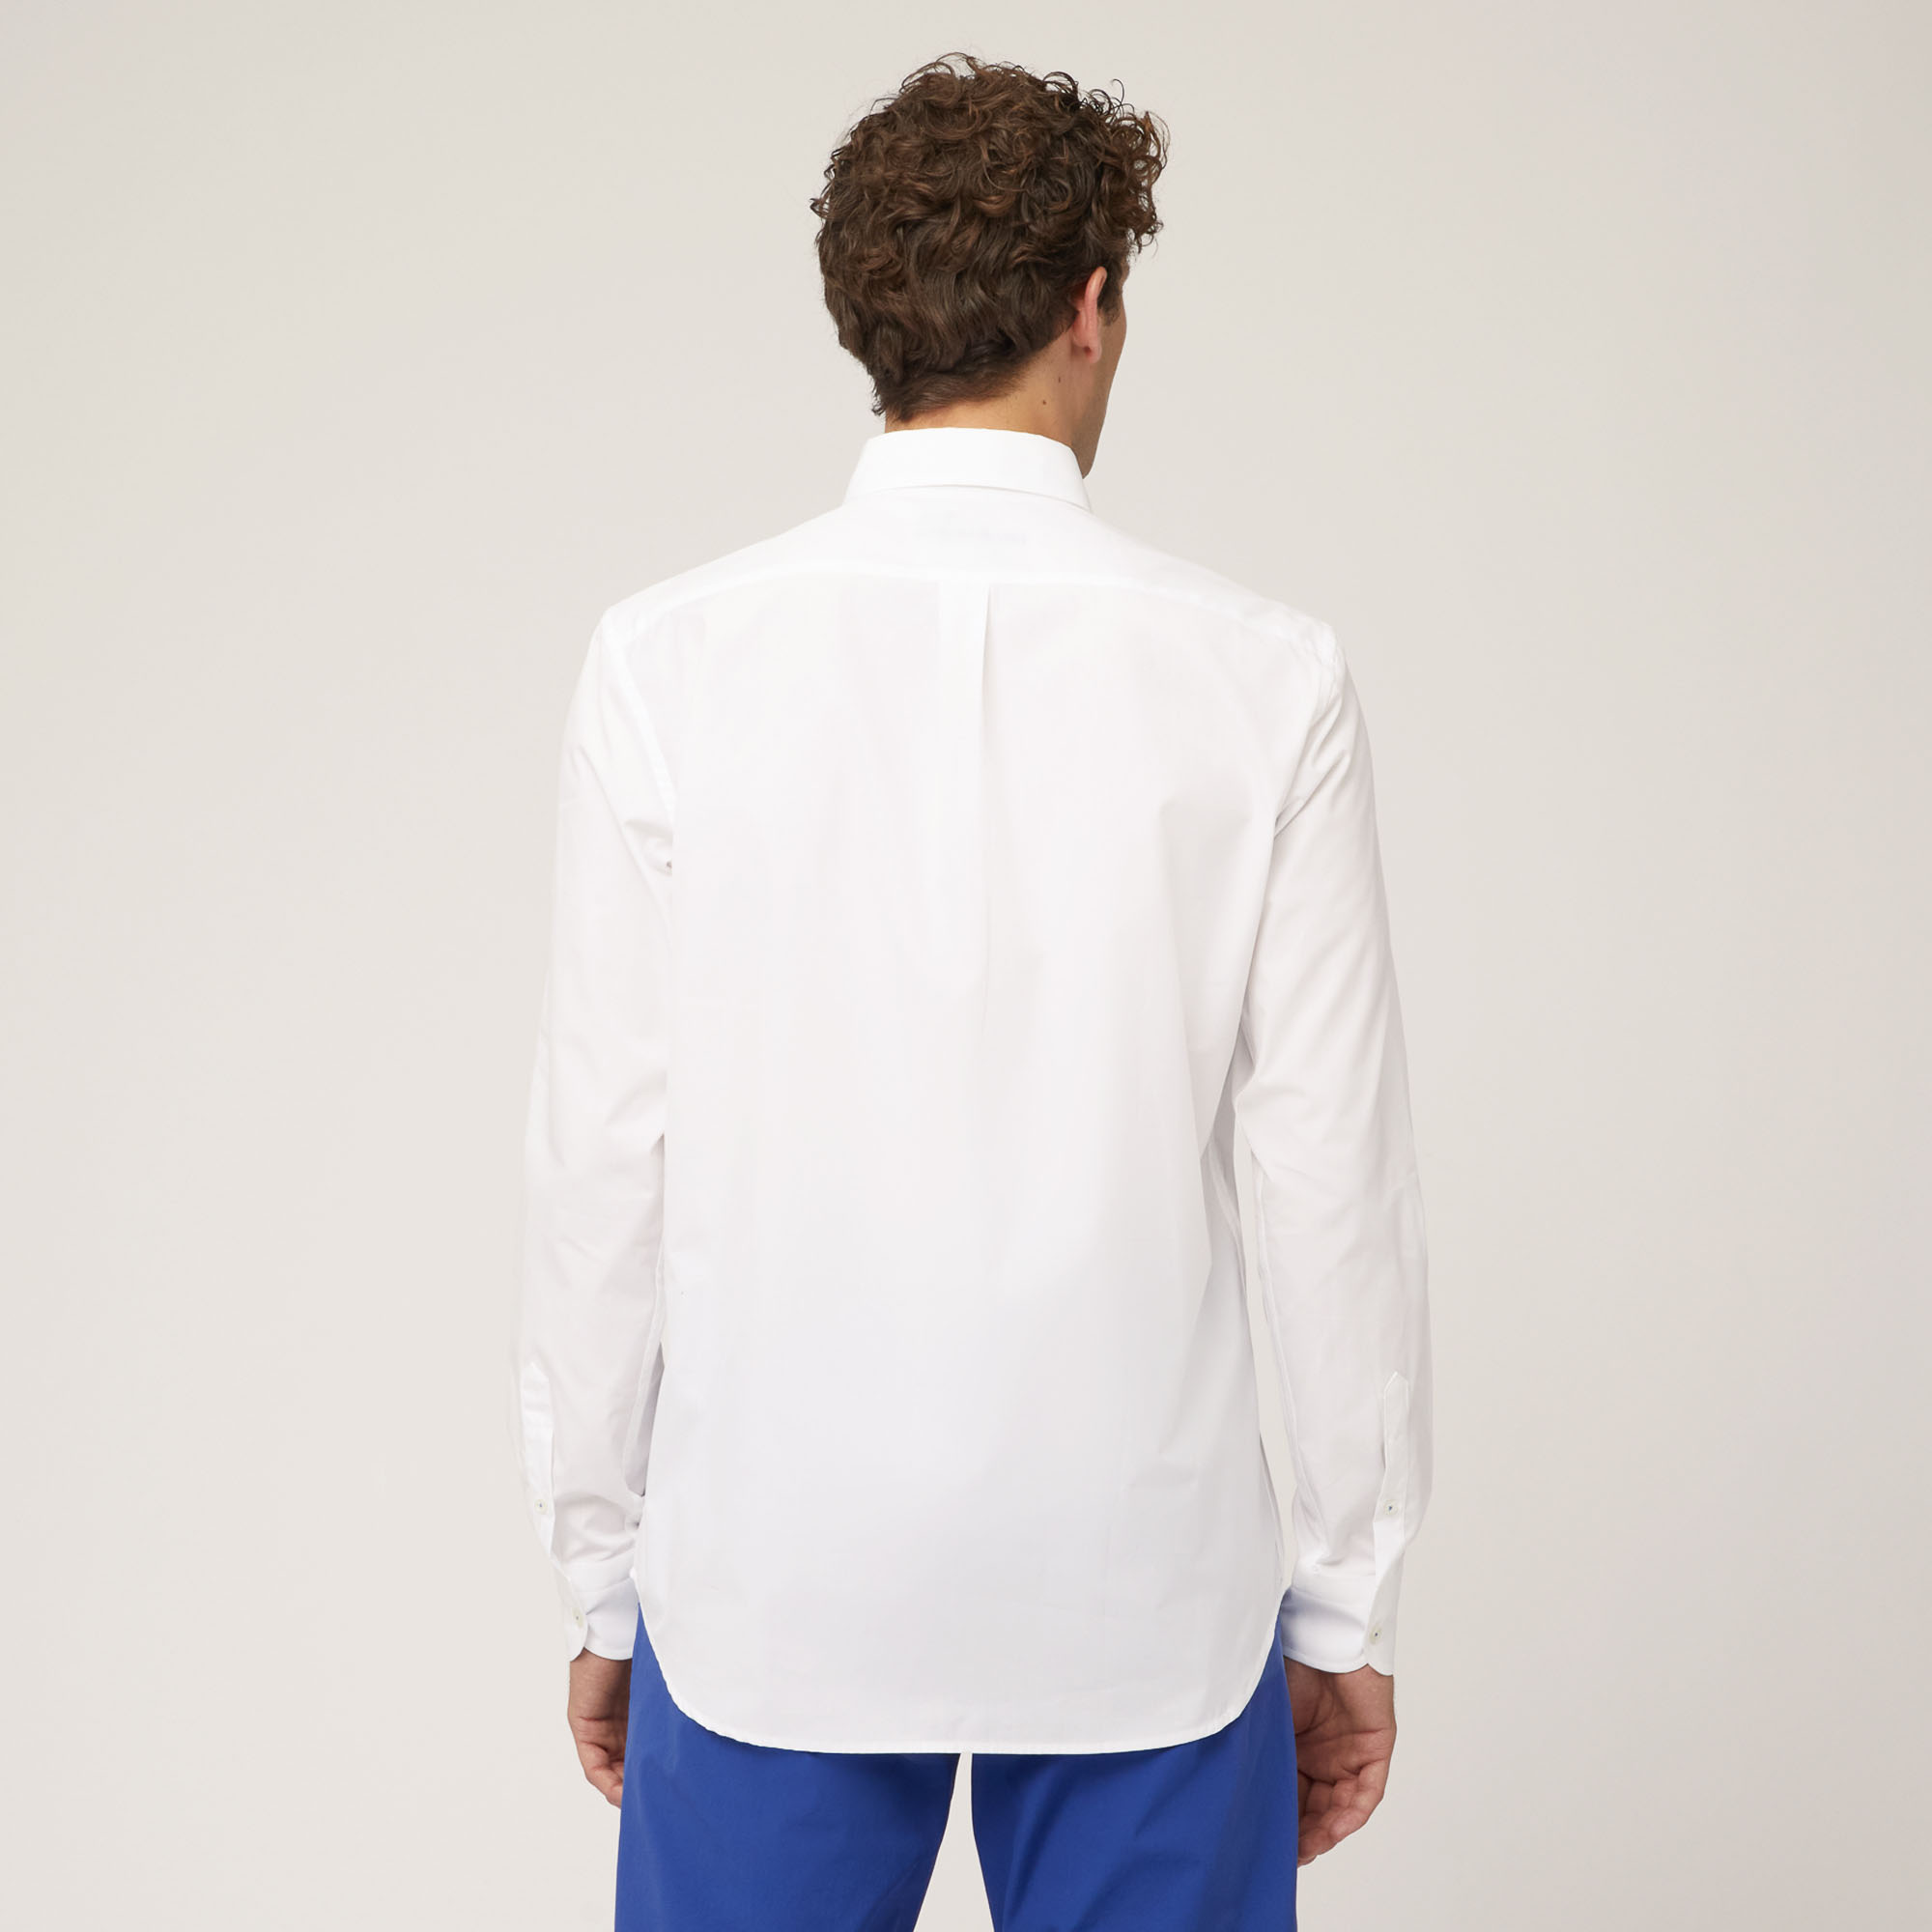 Camicia In Cotone Con Doppio Taschino, Bianco, large image number 1